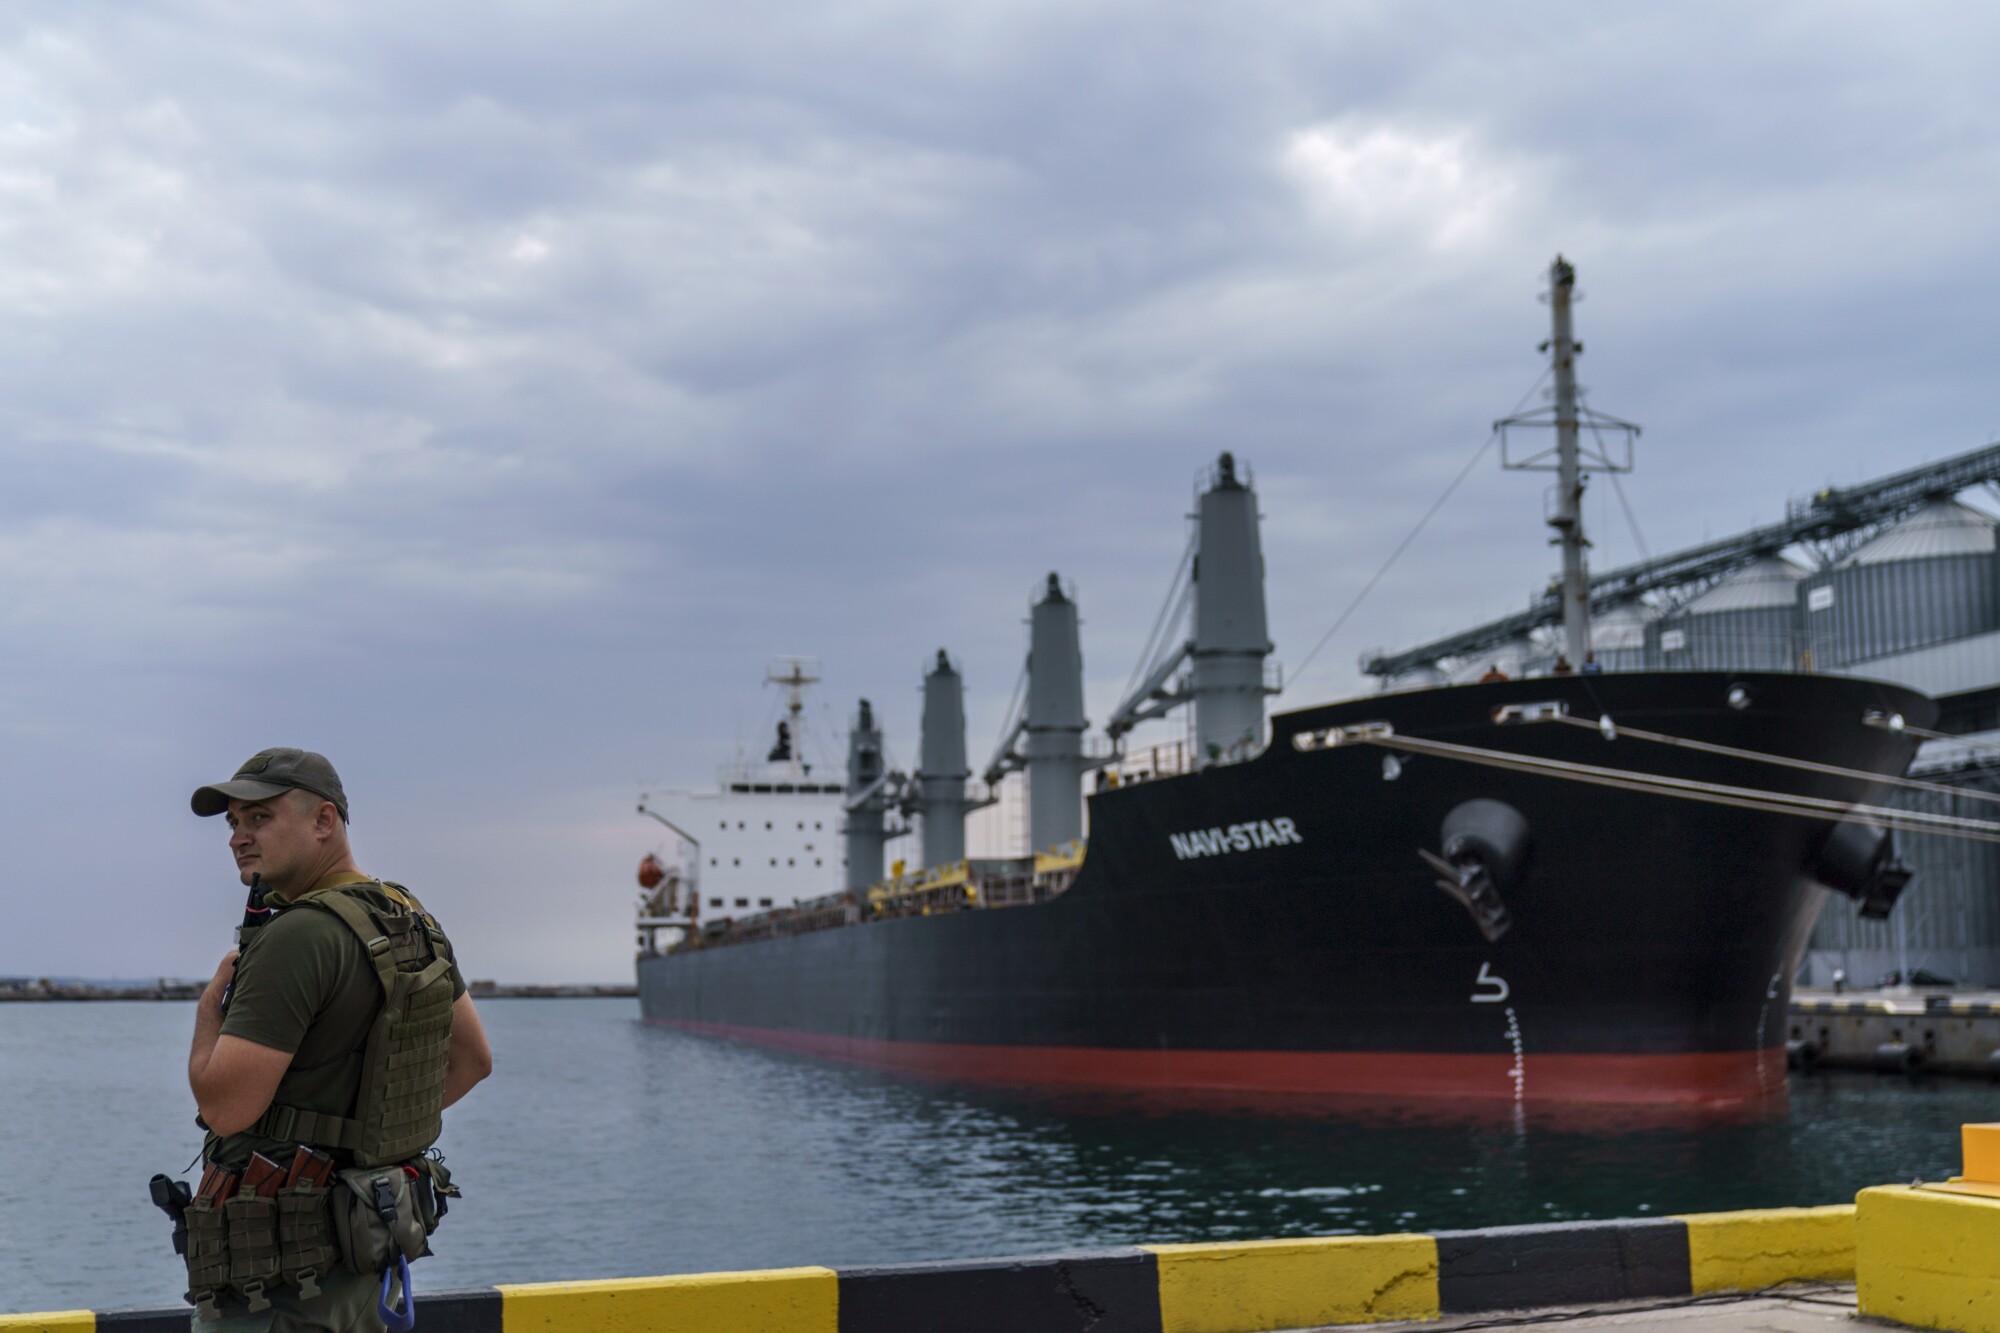 Un oficial de policía está de pie junto a un barco en el puerto.